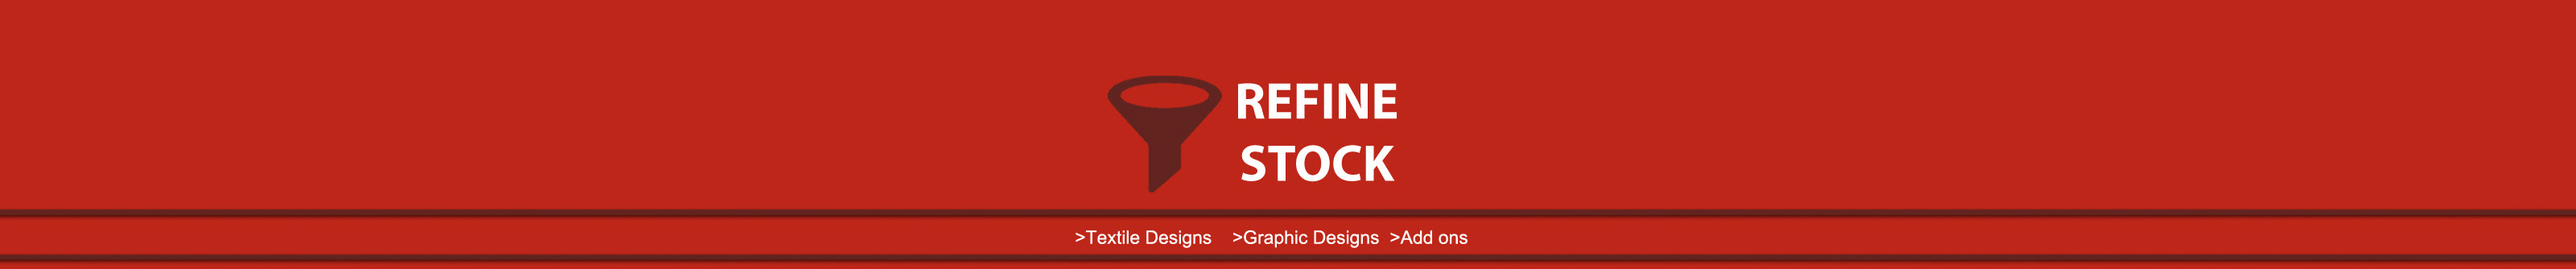 Refine Stock's profile banner